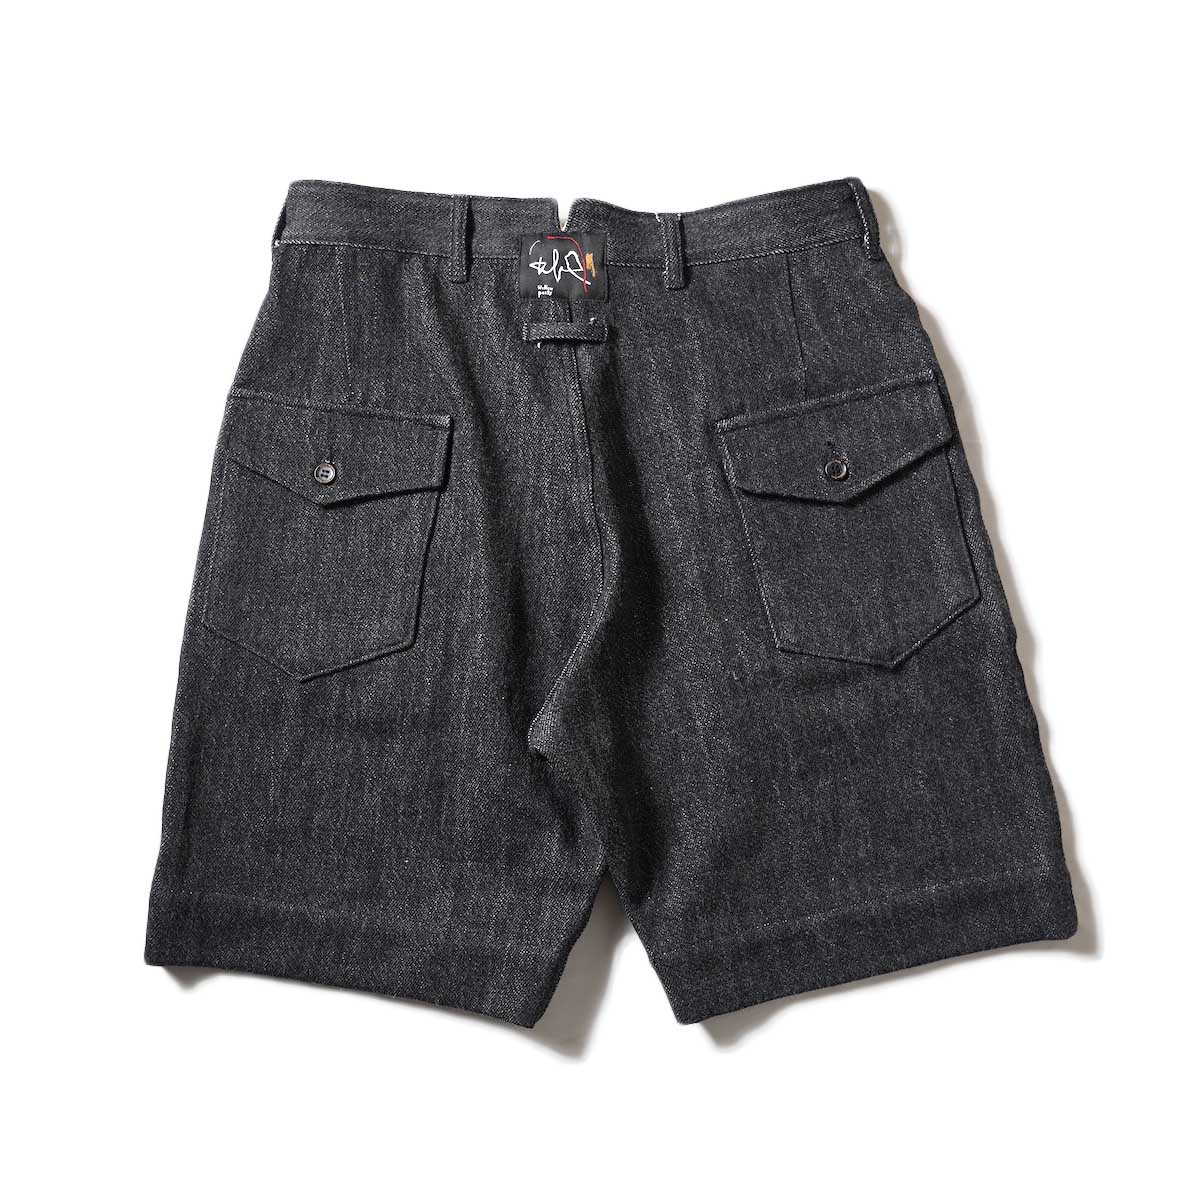 Willow Pants / P-001S - Denim Short Pants (Black Denim)背面